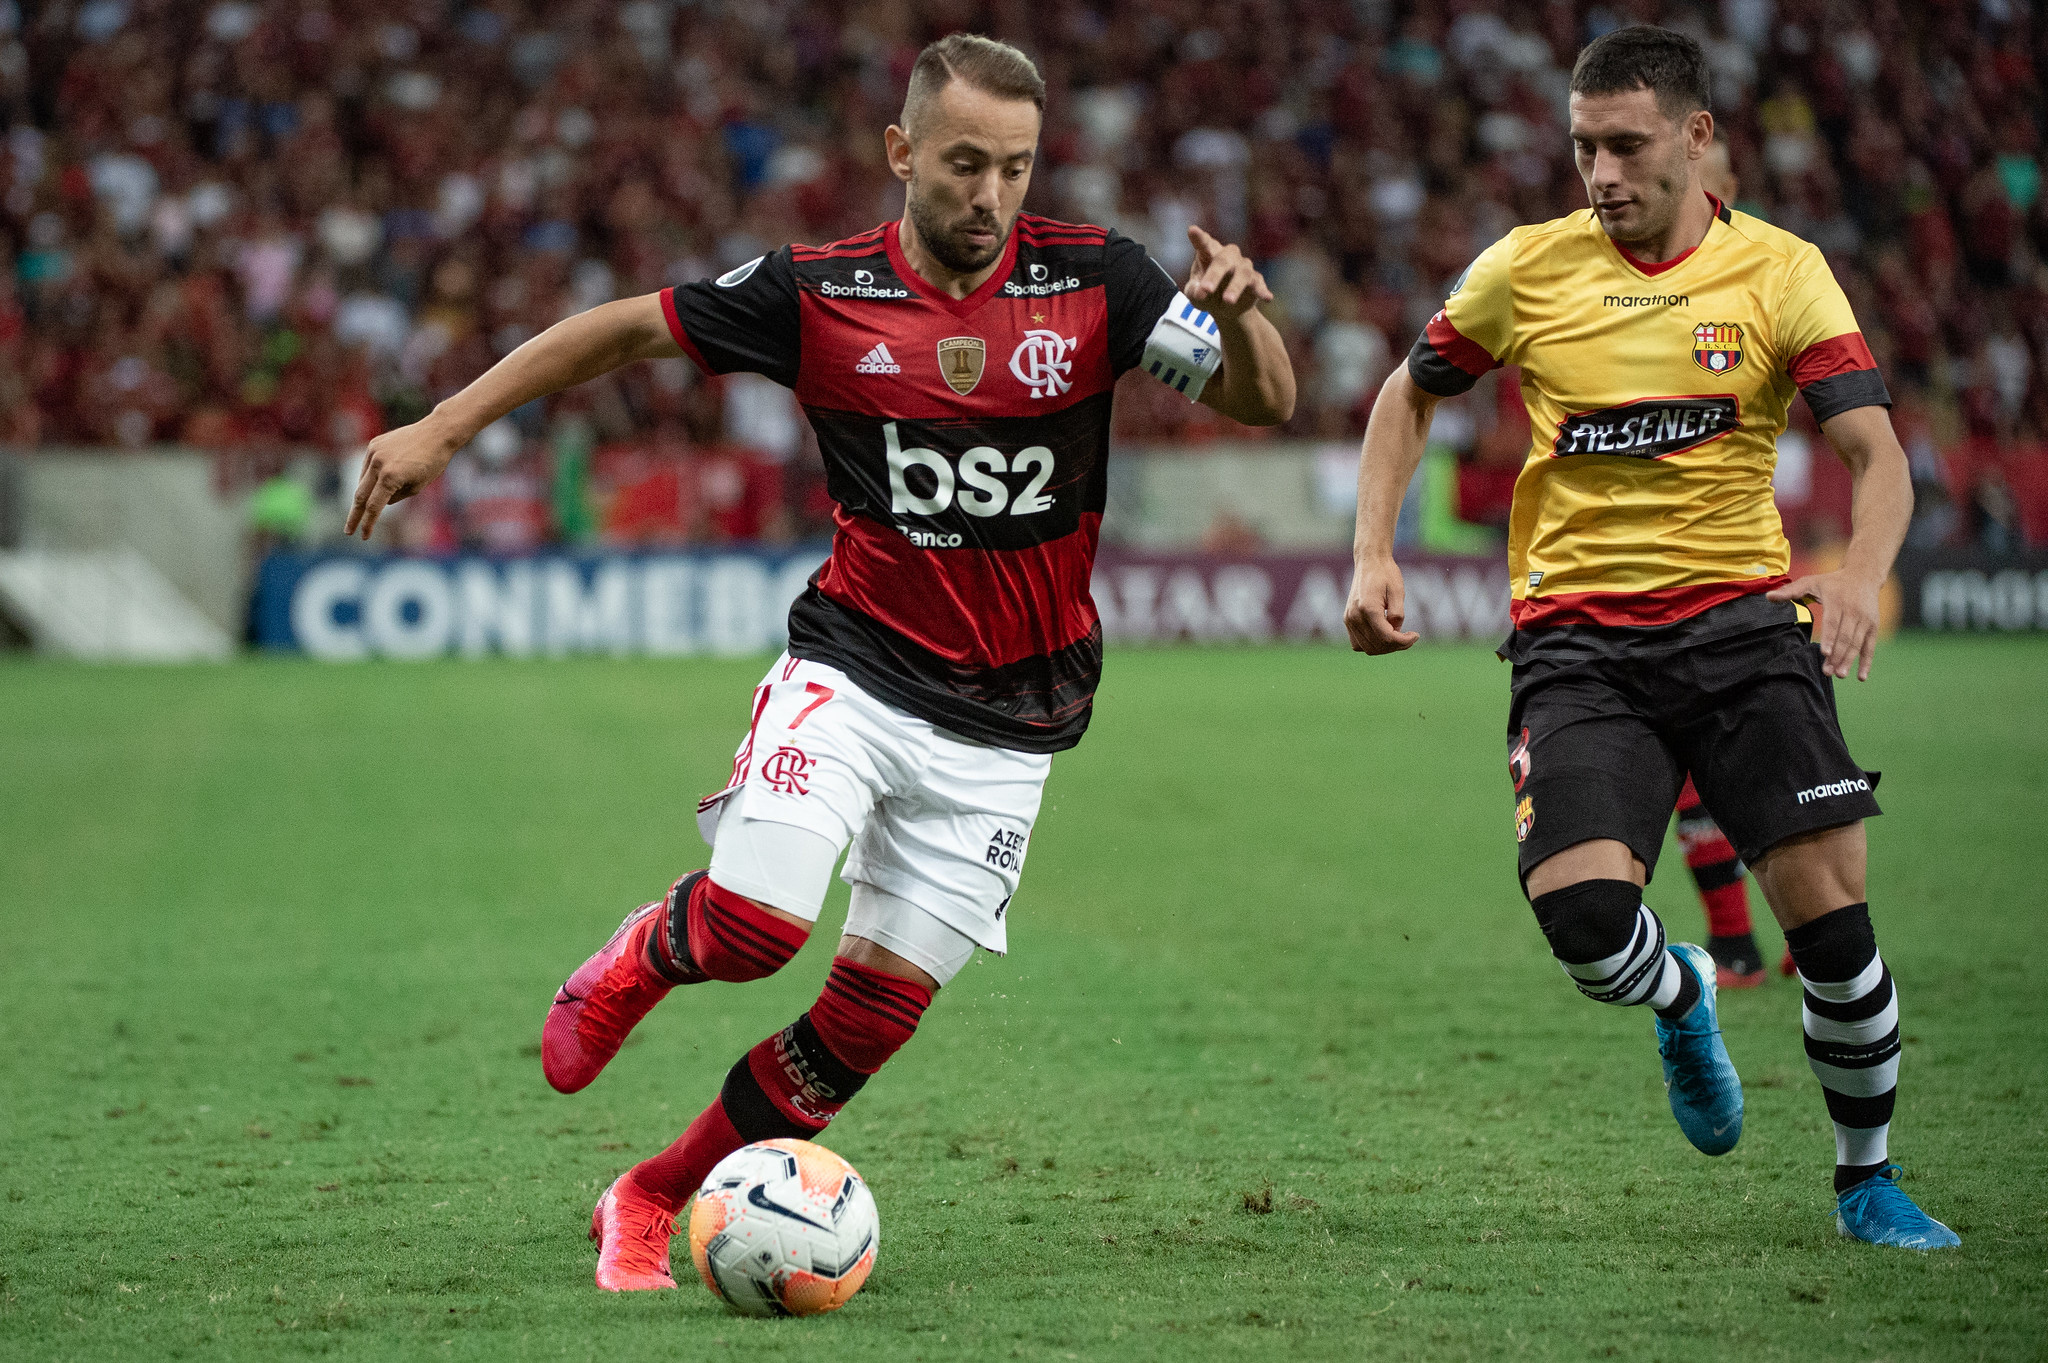 EVERTON RIBEIRO (FLAMENGO) - Jogador que já vestiu a camisa da Seleção algumas vezes, o meia Everton Ribeiro vem sendo um dos destaques do Flamengo desde o ano passado. Pela regularidade, pode conseguir uma das vagas no elenco de Tite.